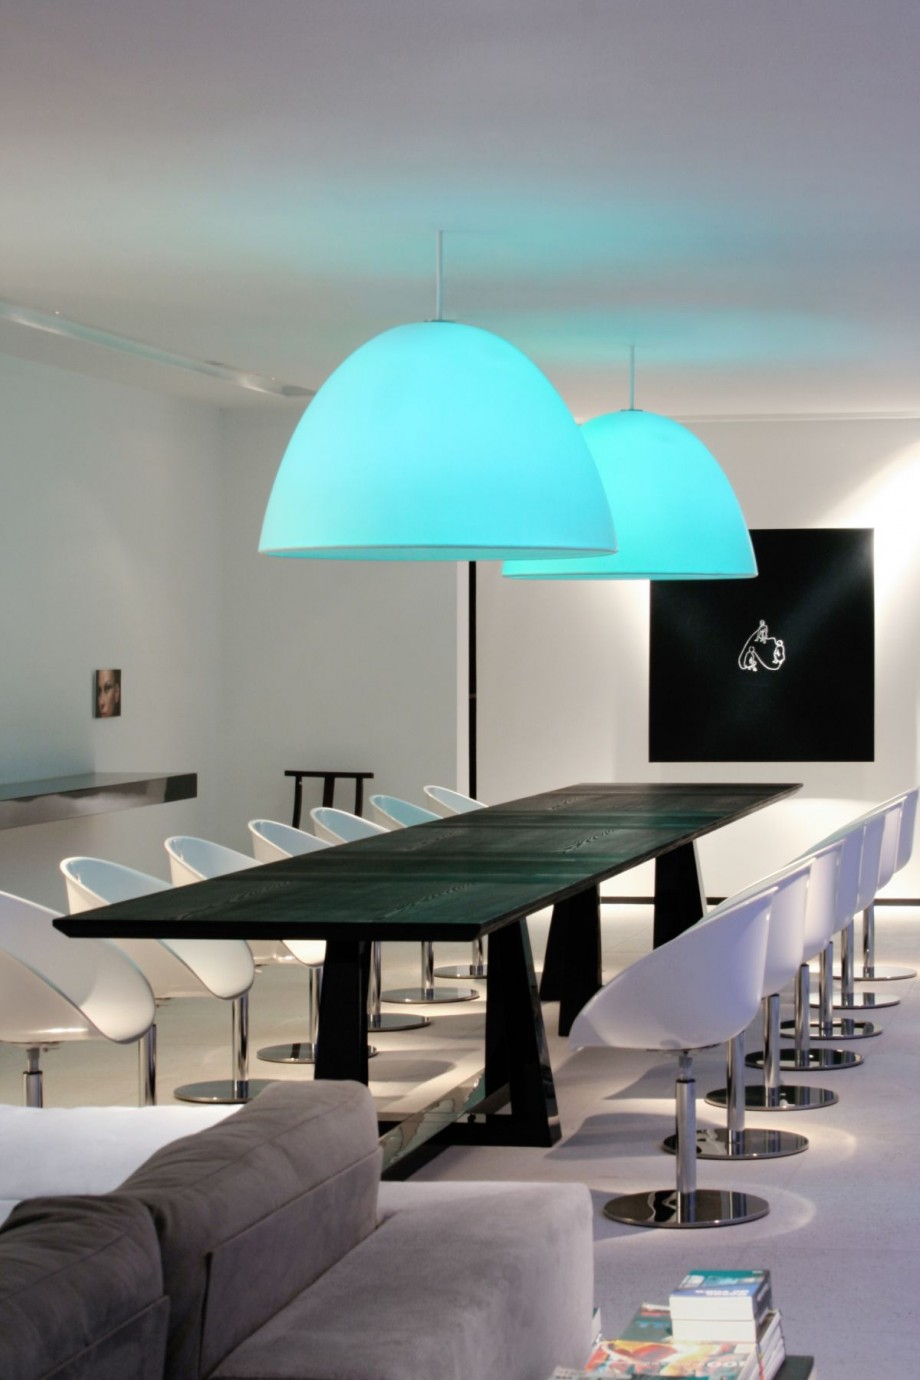 Inspiring Modern Dining Room Design With Large Blue Lights